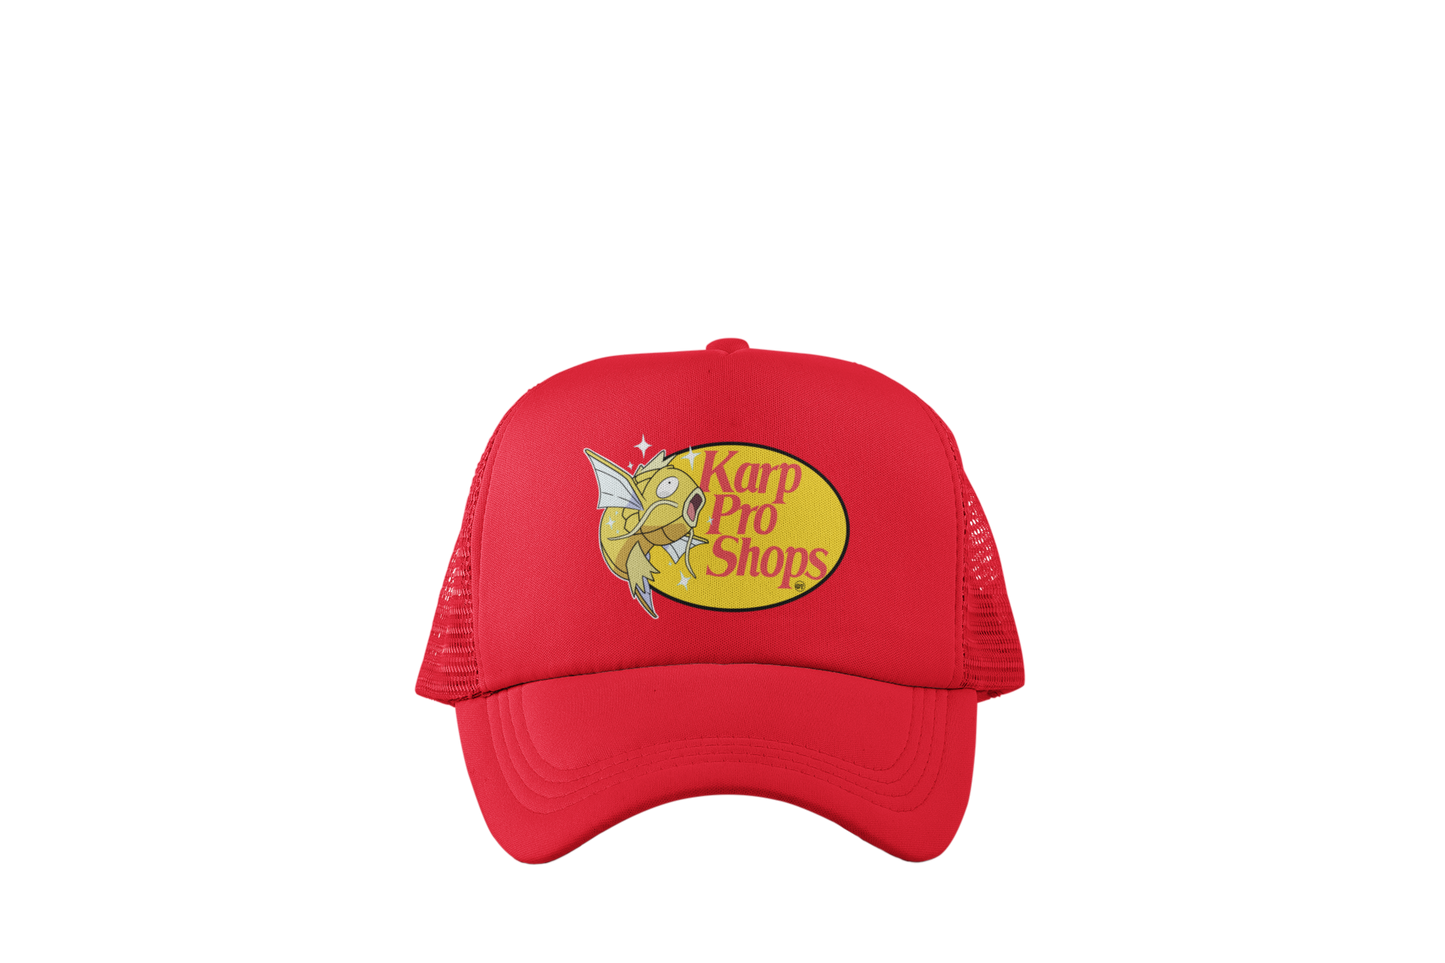 Karp Pro Shops Trucker Hats